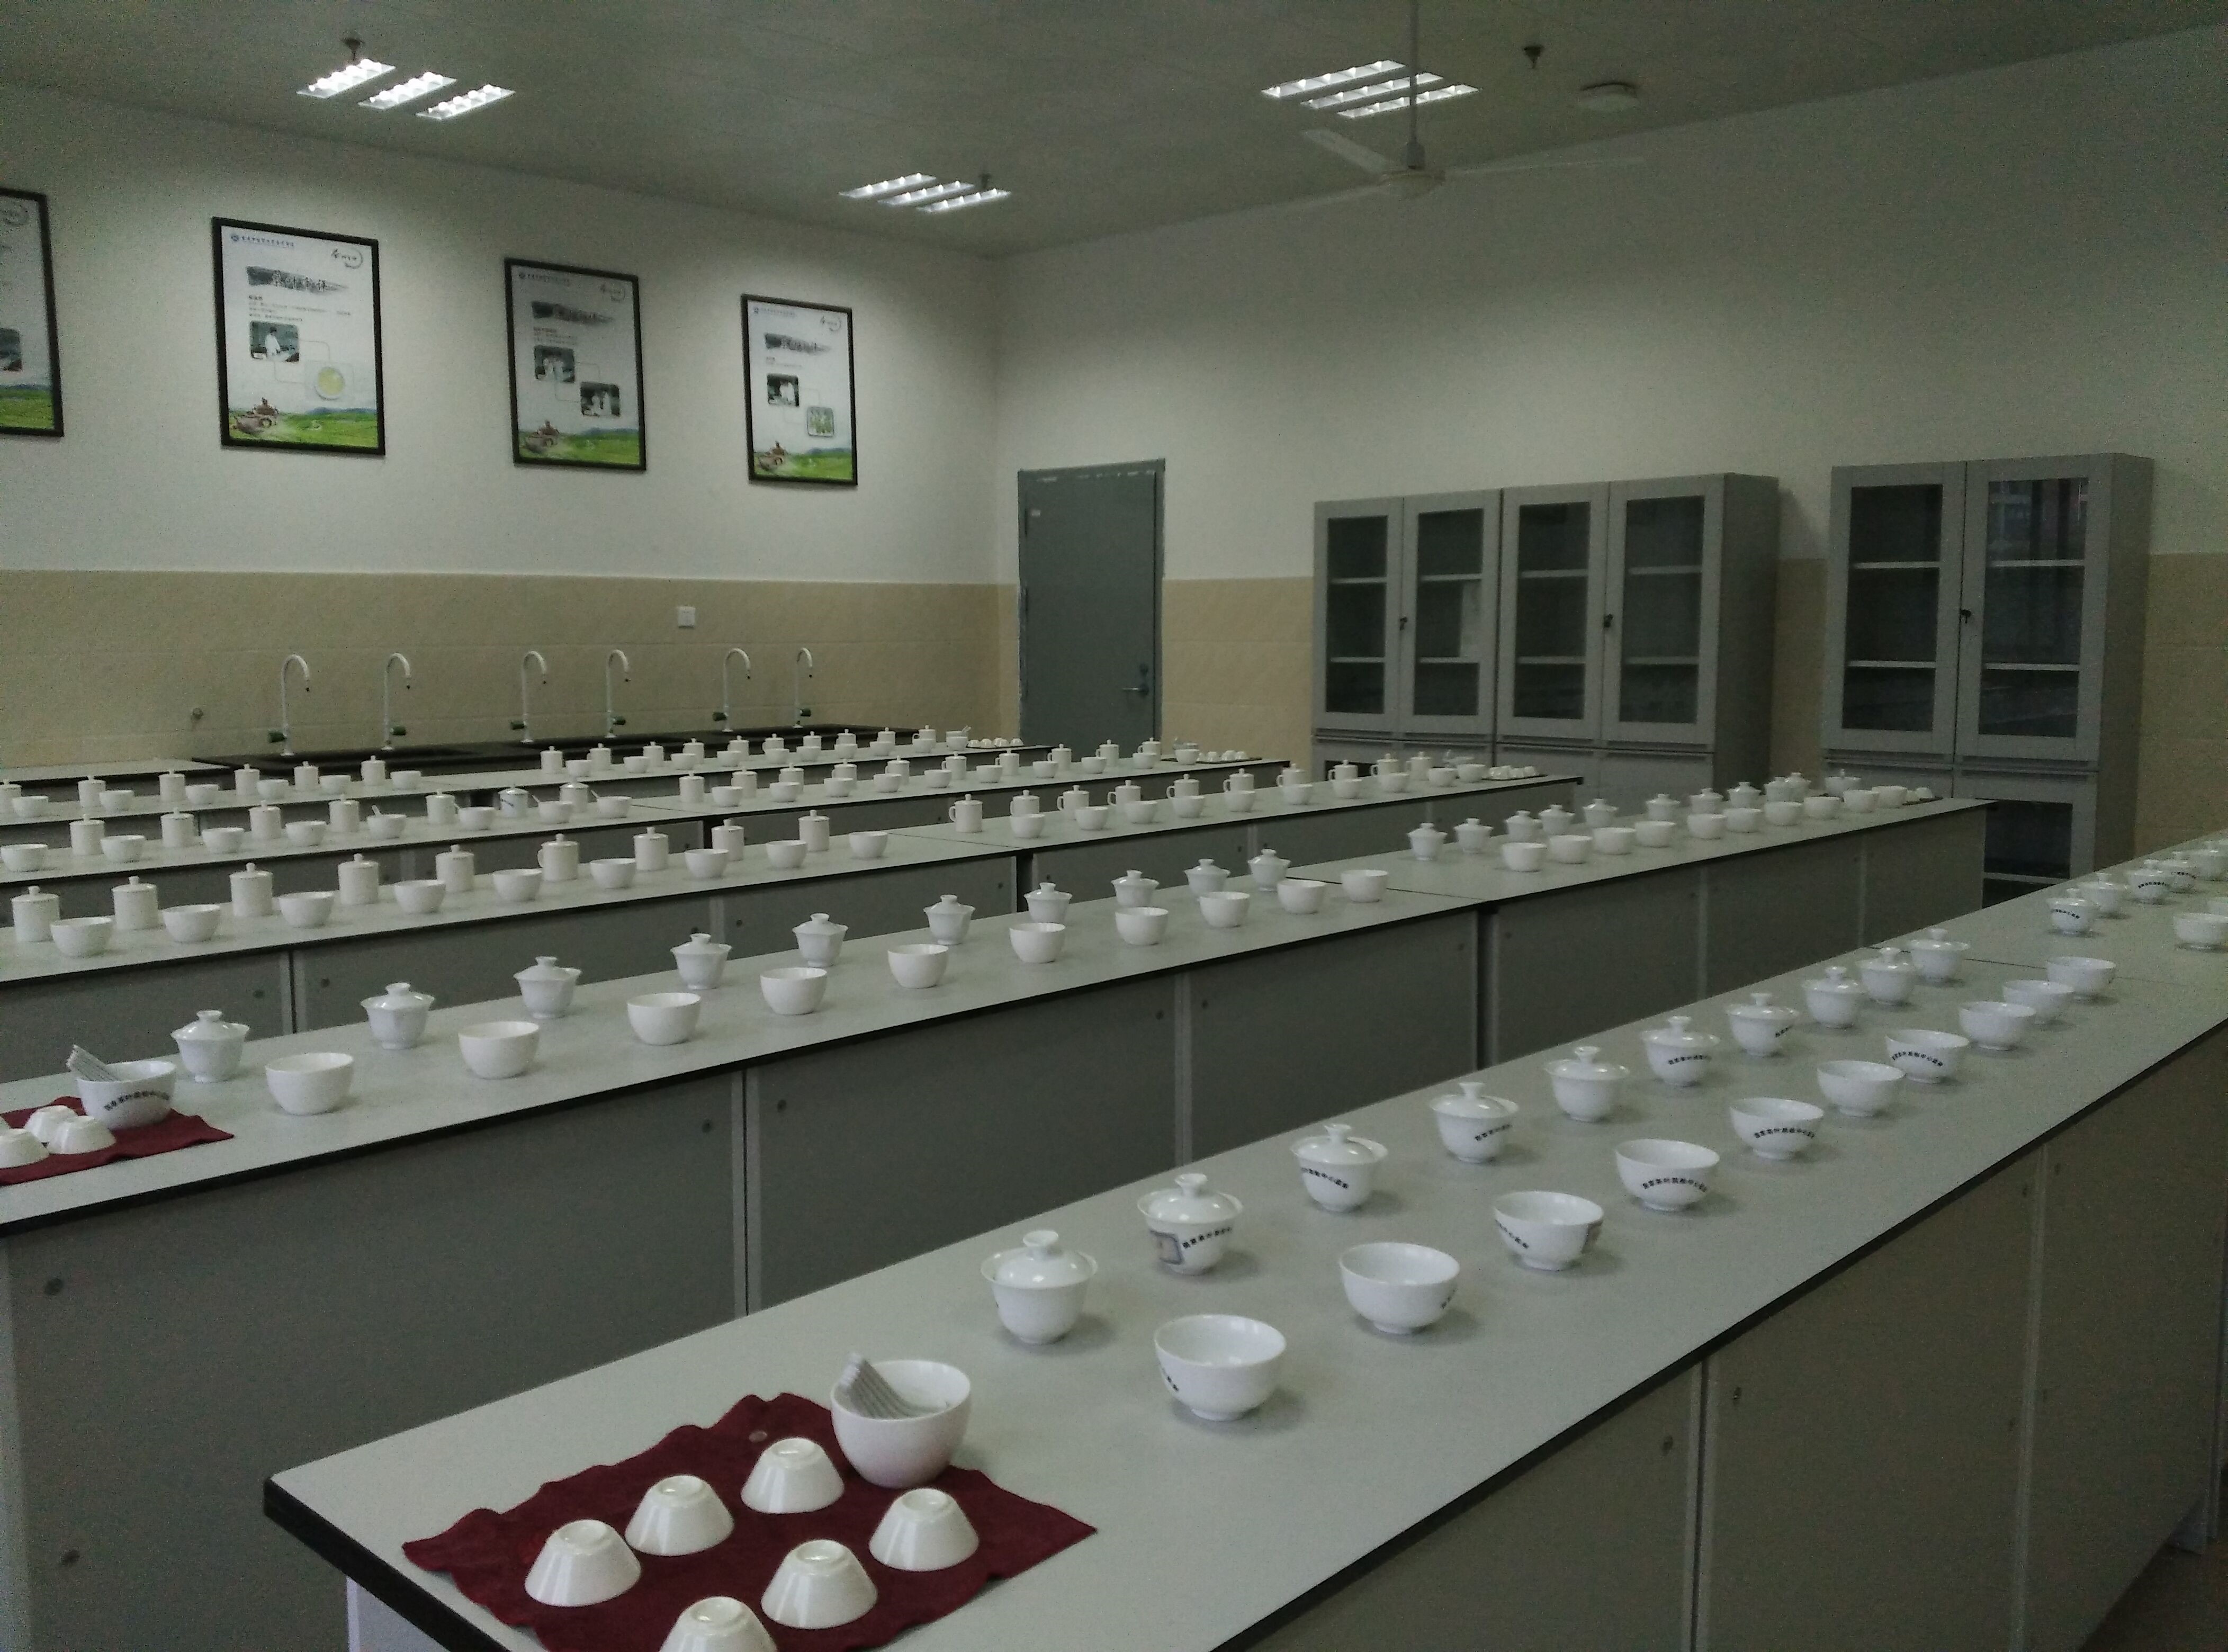 茶叶生产与加工专业